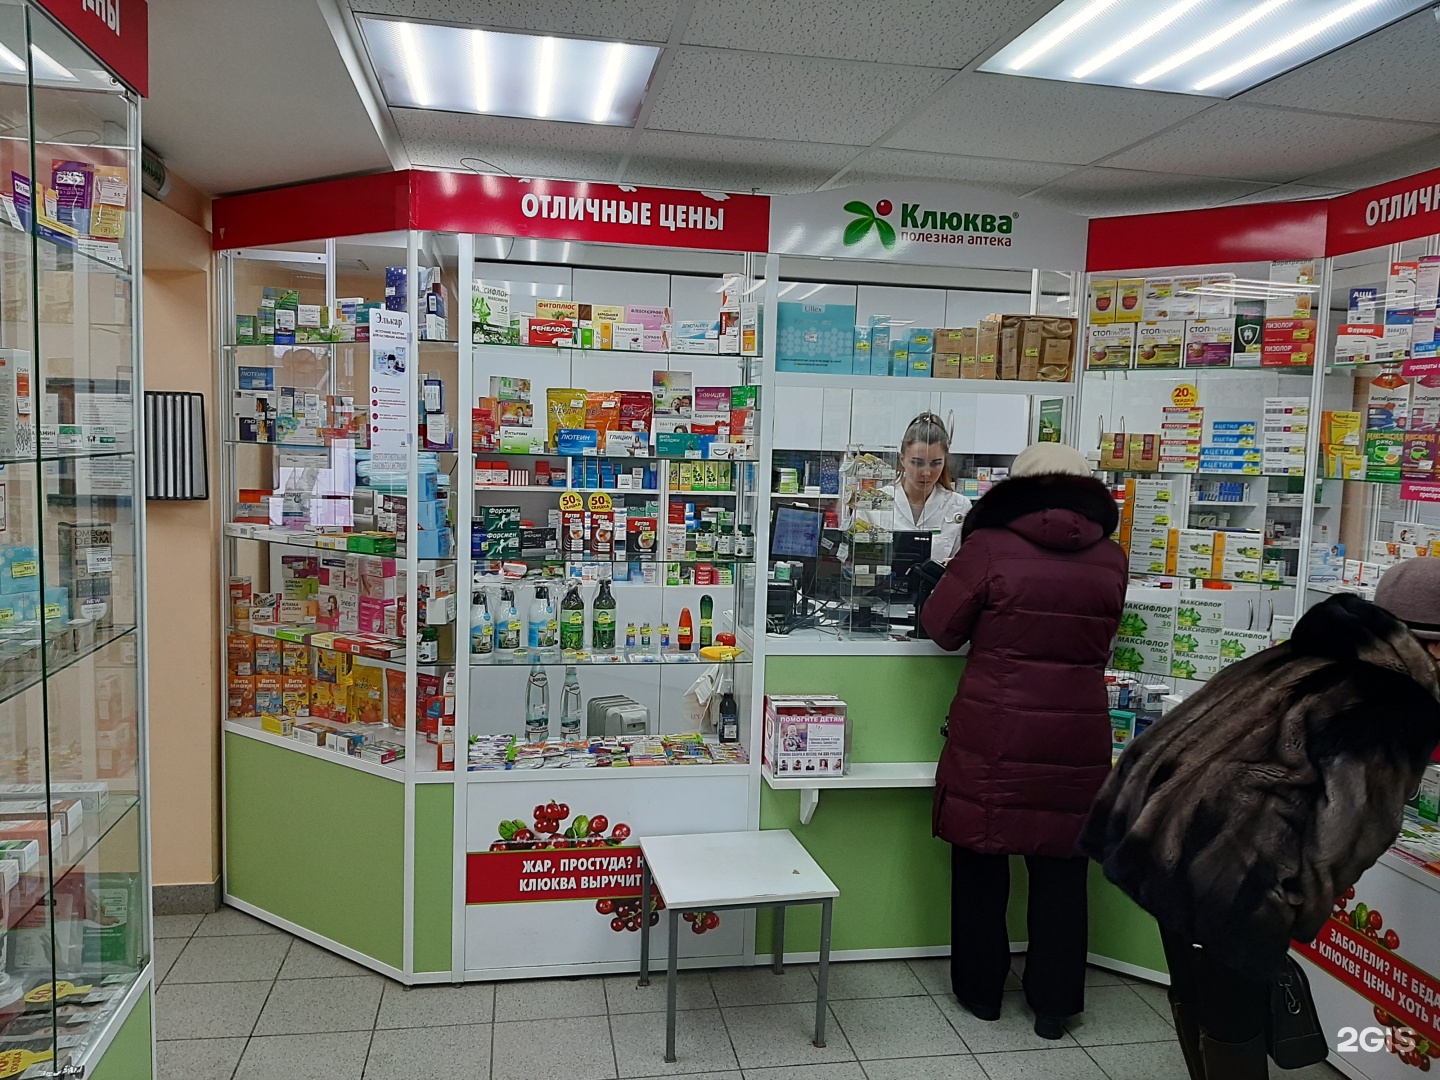 Красная Аптека Ижевск